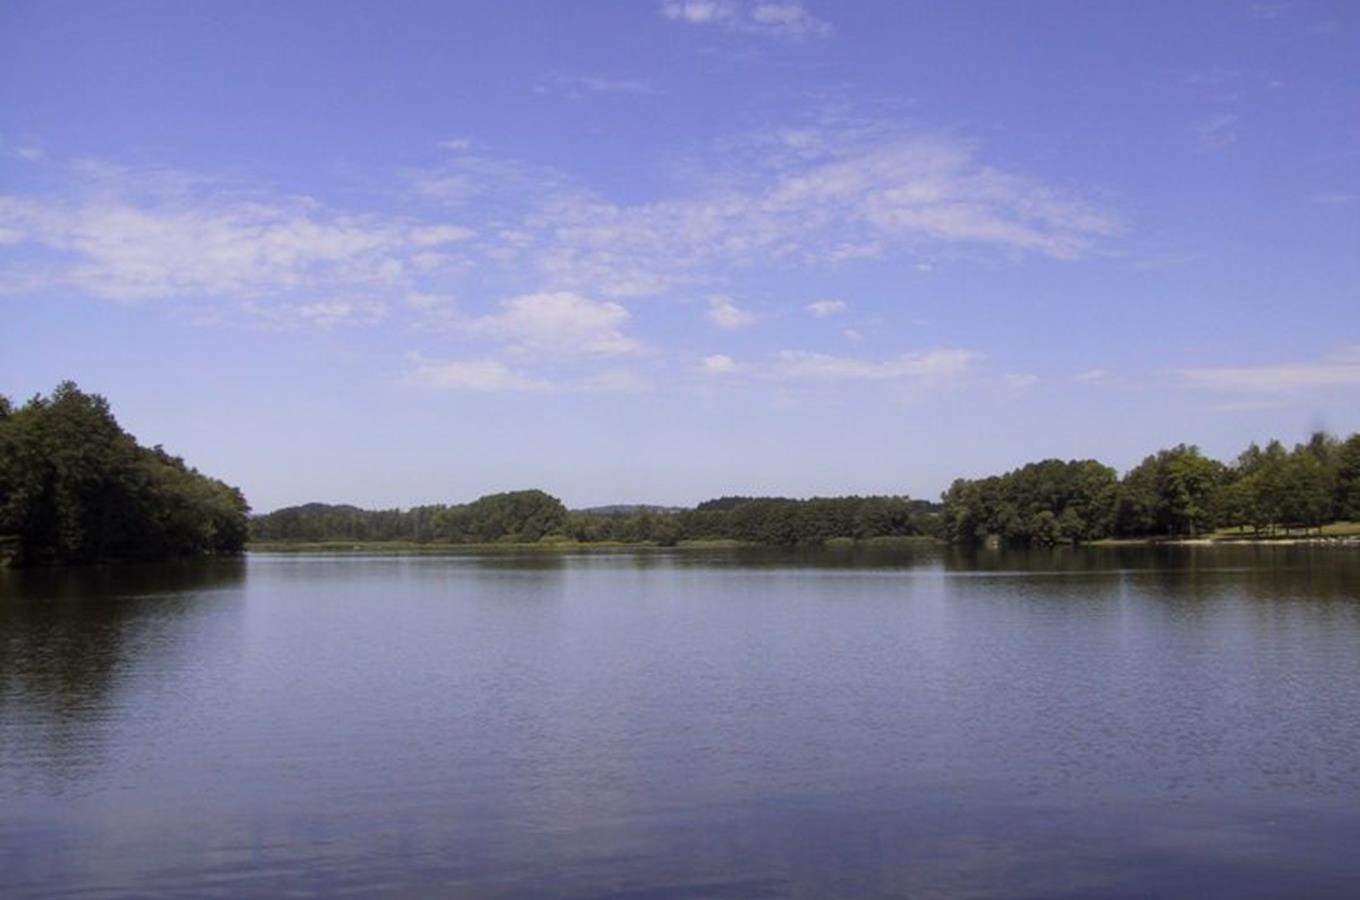 Naučná stezka a přírodní park Lanškrounské rybníky